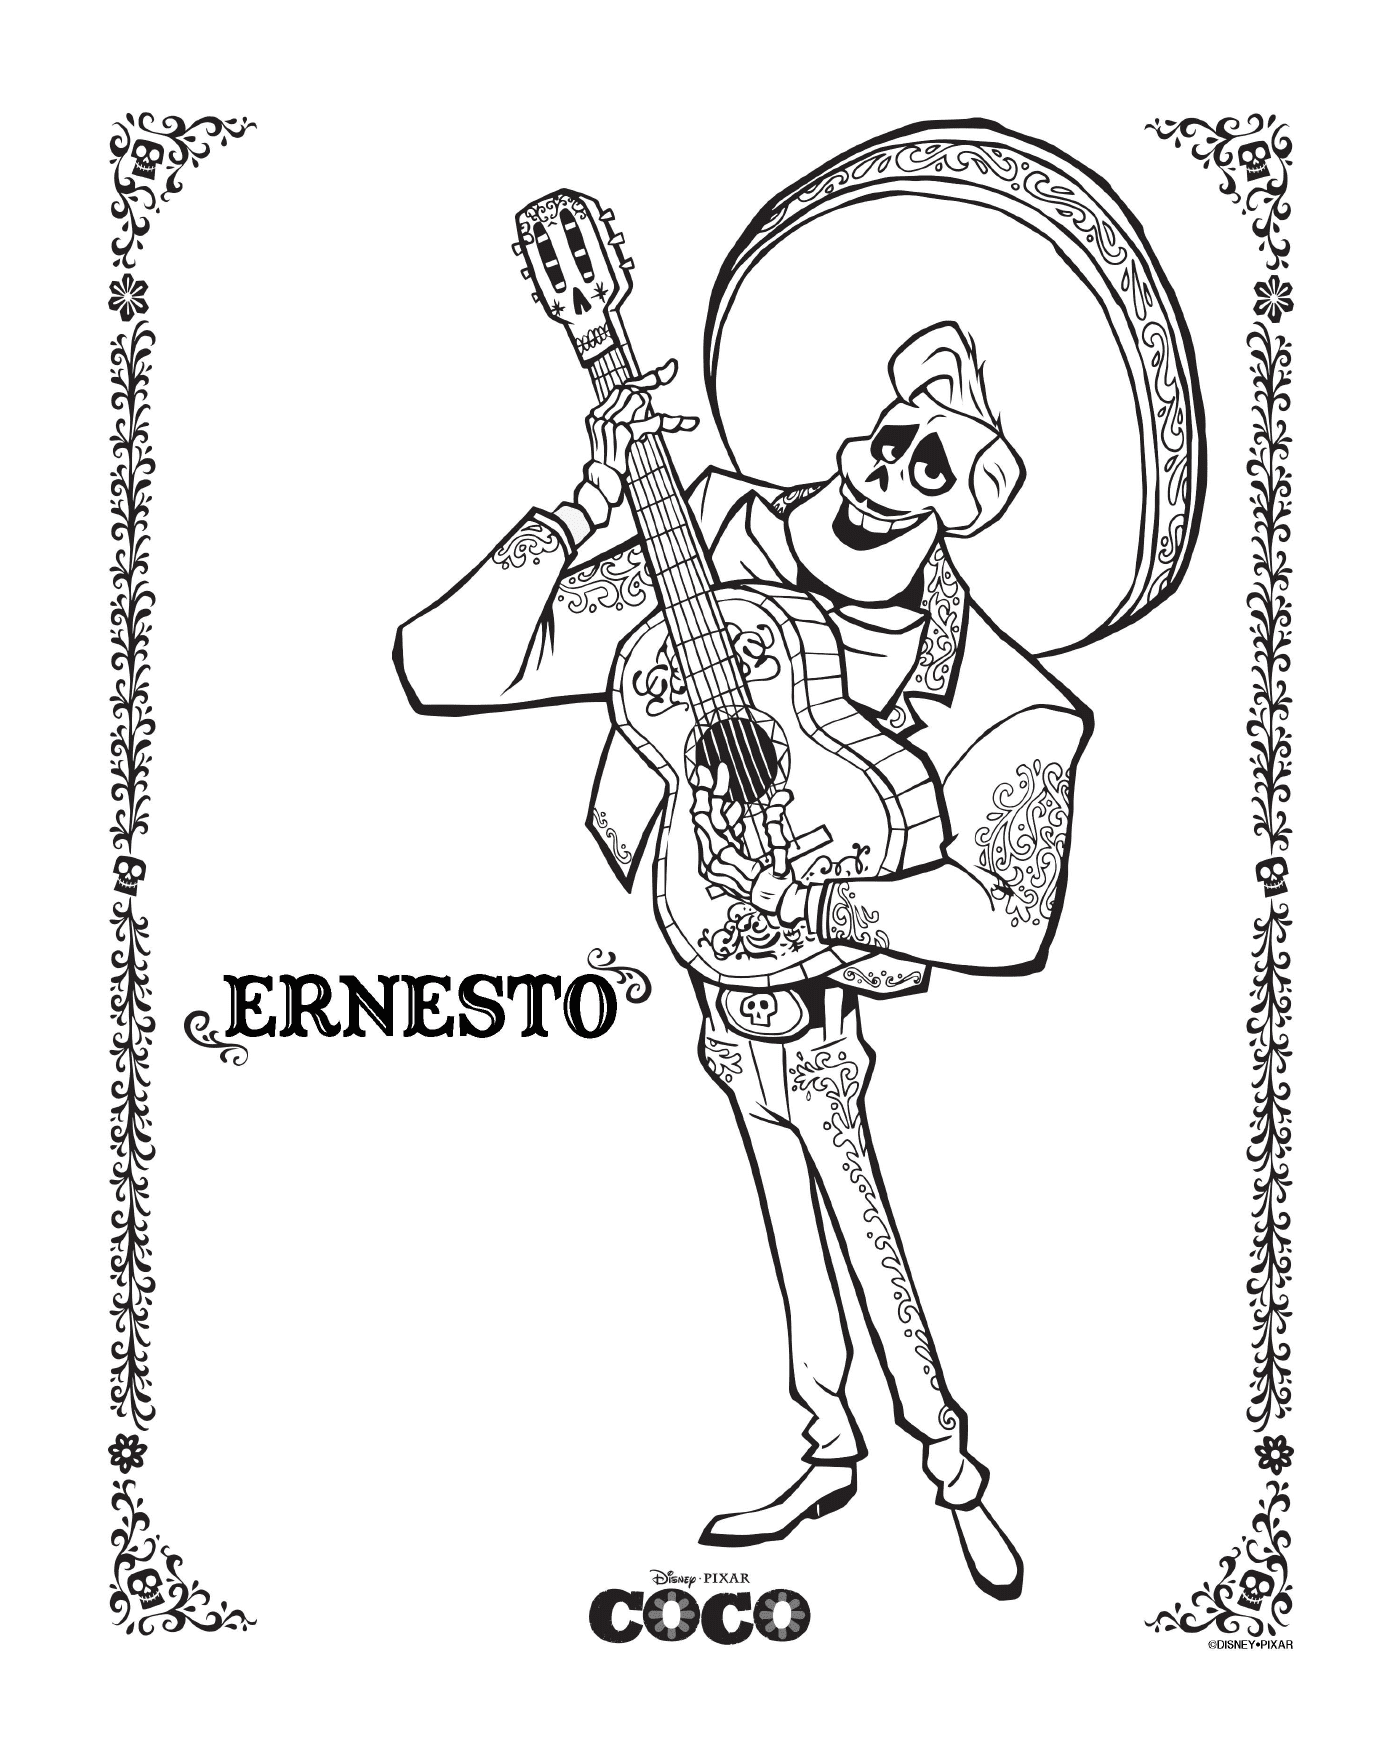   Ernesto dans Coco, de Disney 